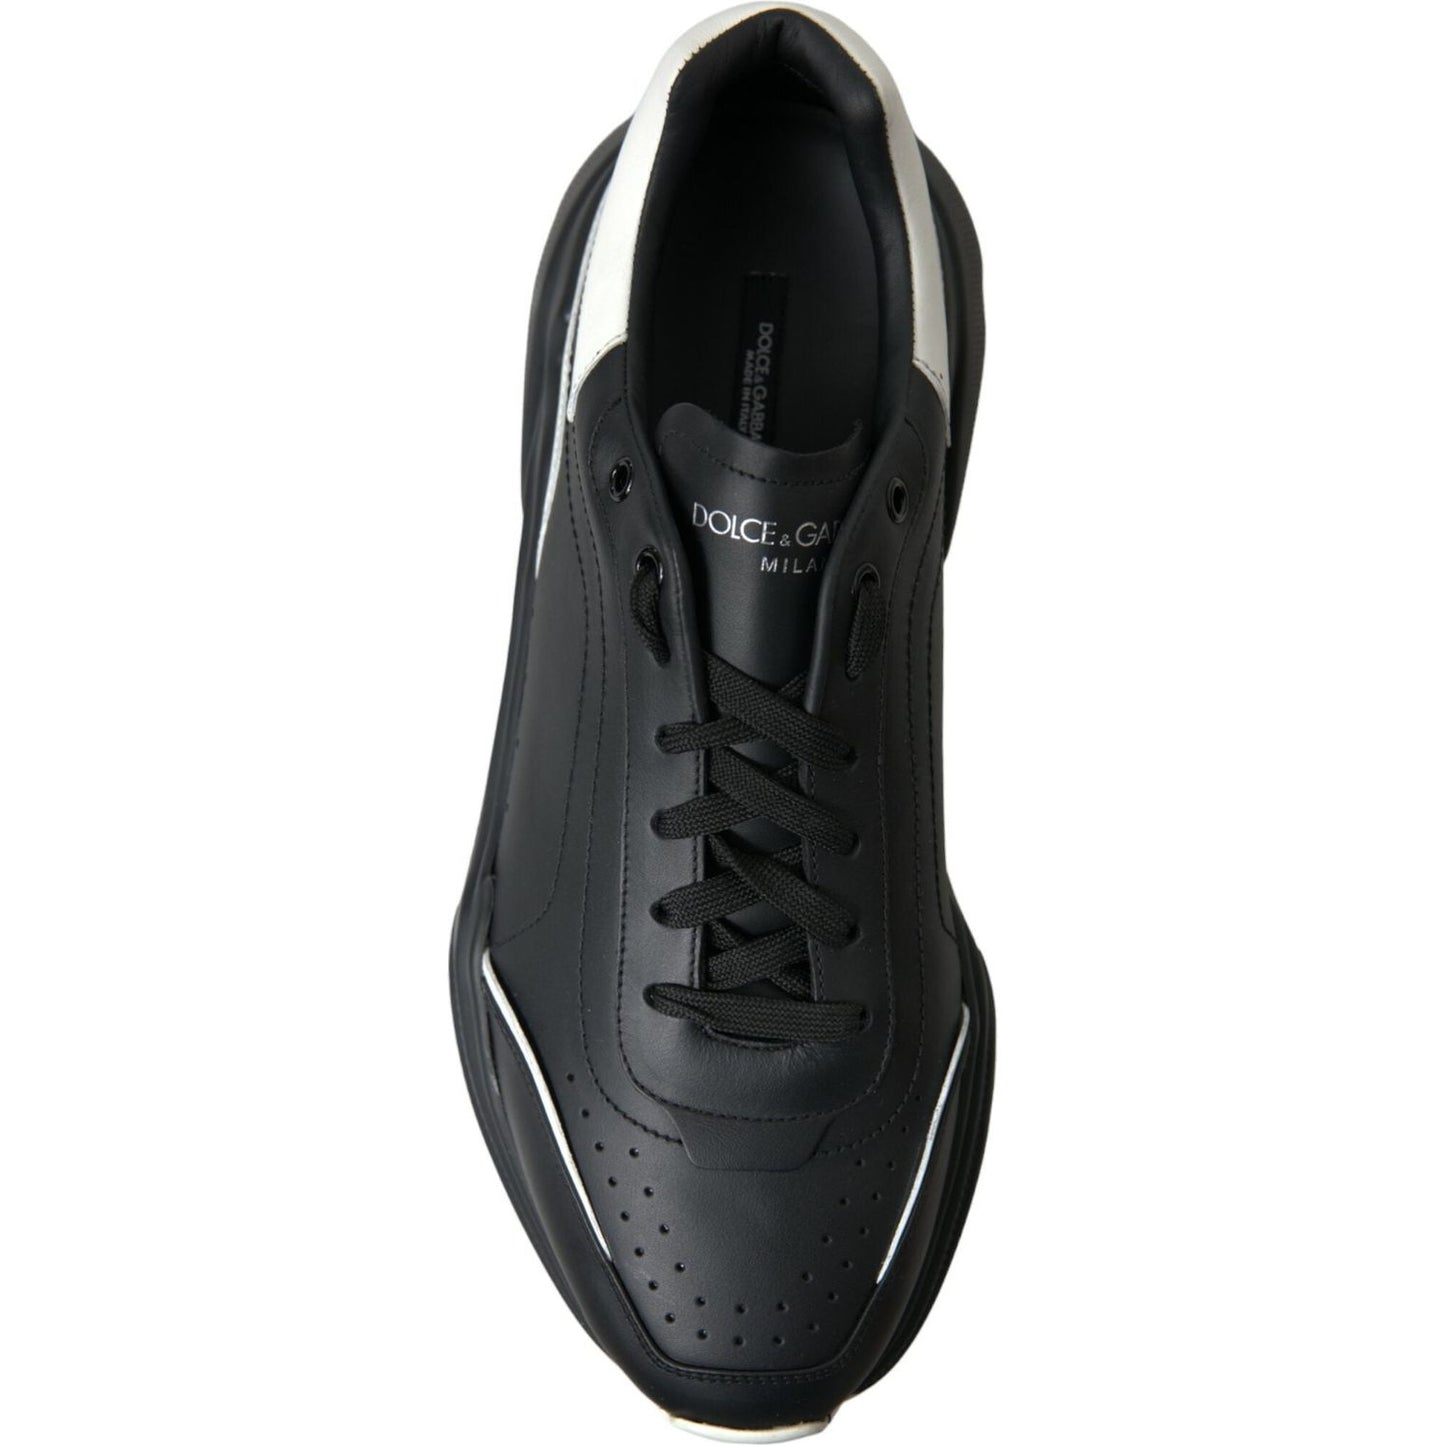 Dolce & GabbanaElevated Daymaster Black Platform SneakersMcRichard Designer Brands£609.00